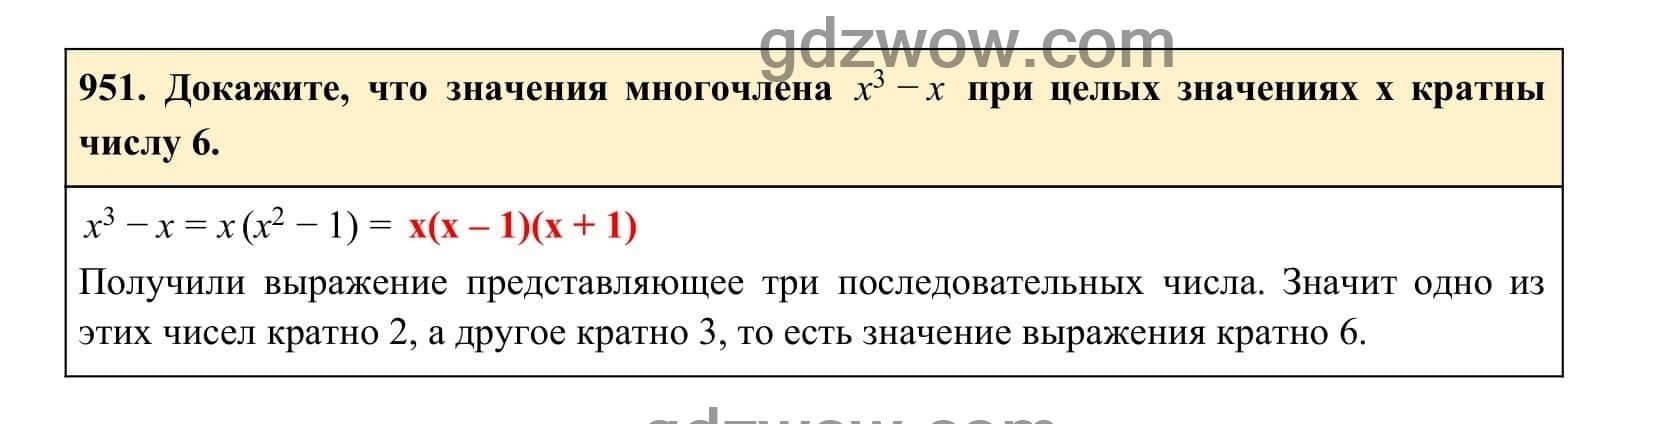 Упражнение 951 - ГДЗ по Алгебре 7 класс Учебник Макарычев (решебник) - GDZwow